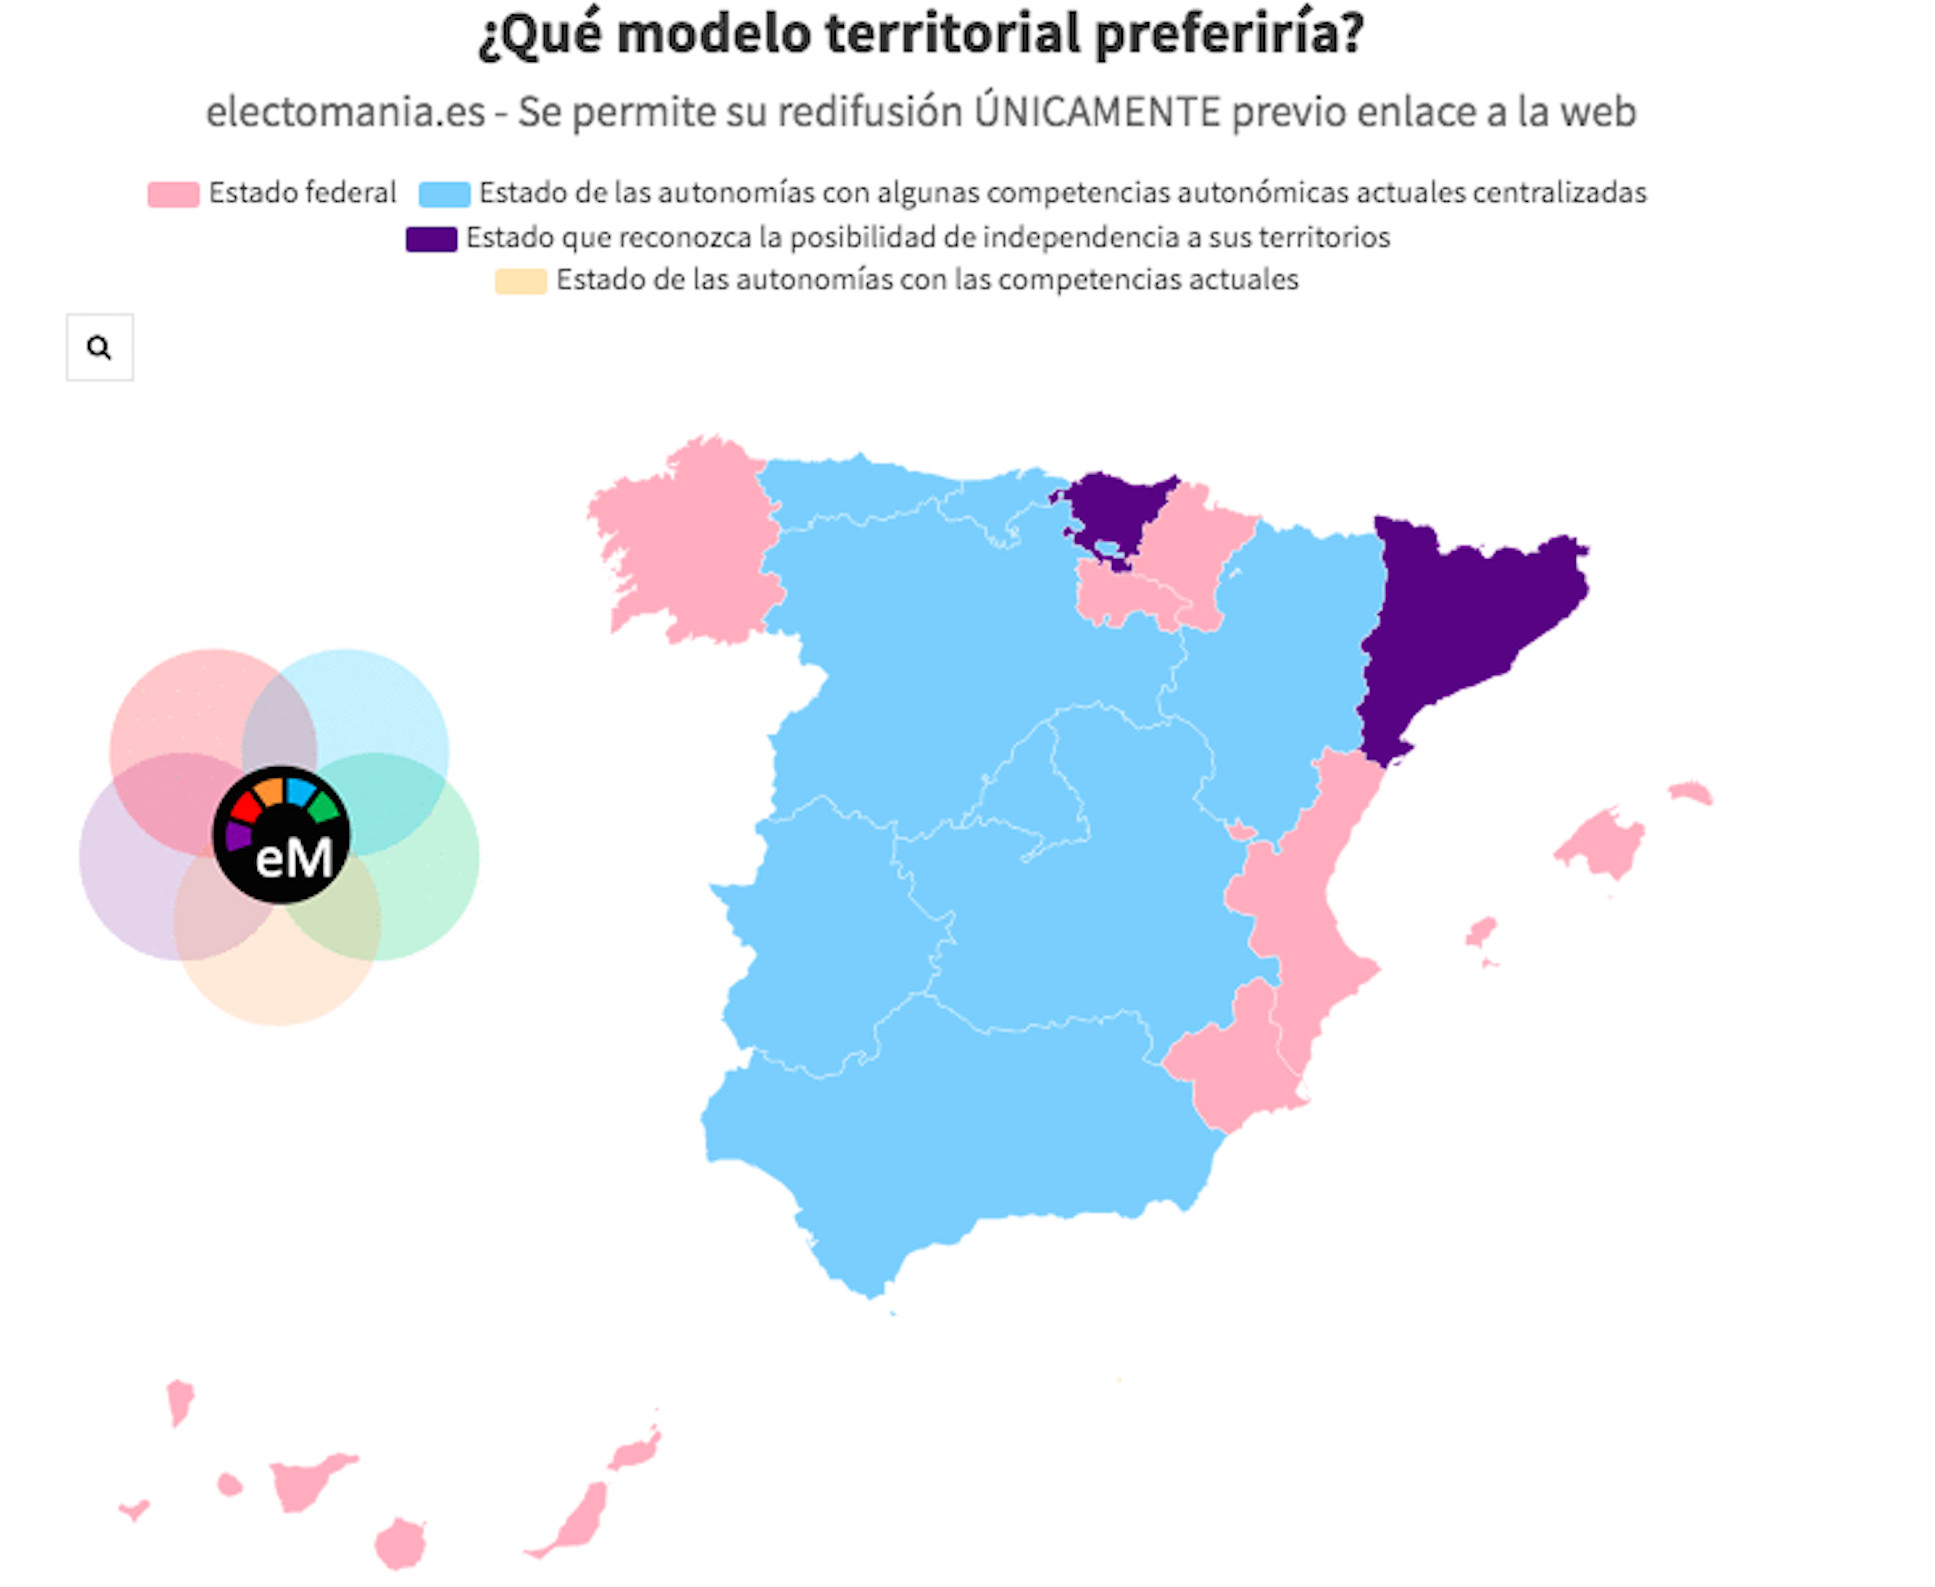 Aquest és el model d'Estat preferit de Catalunya, segons un sondeig